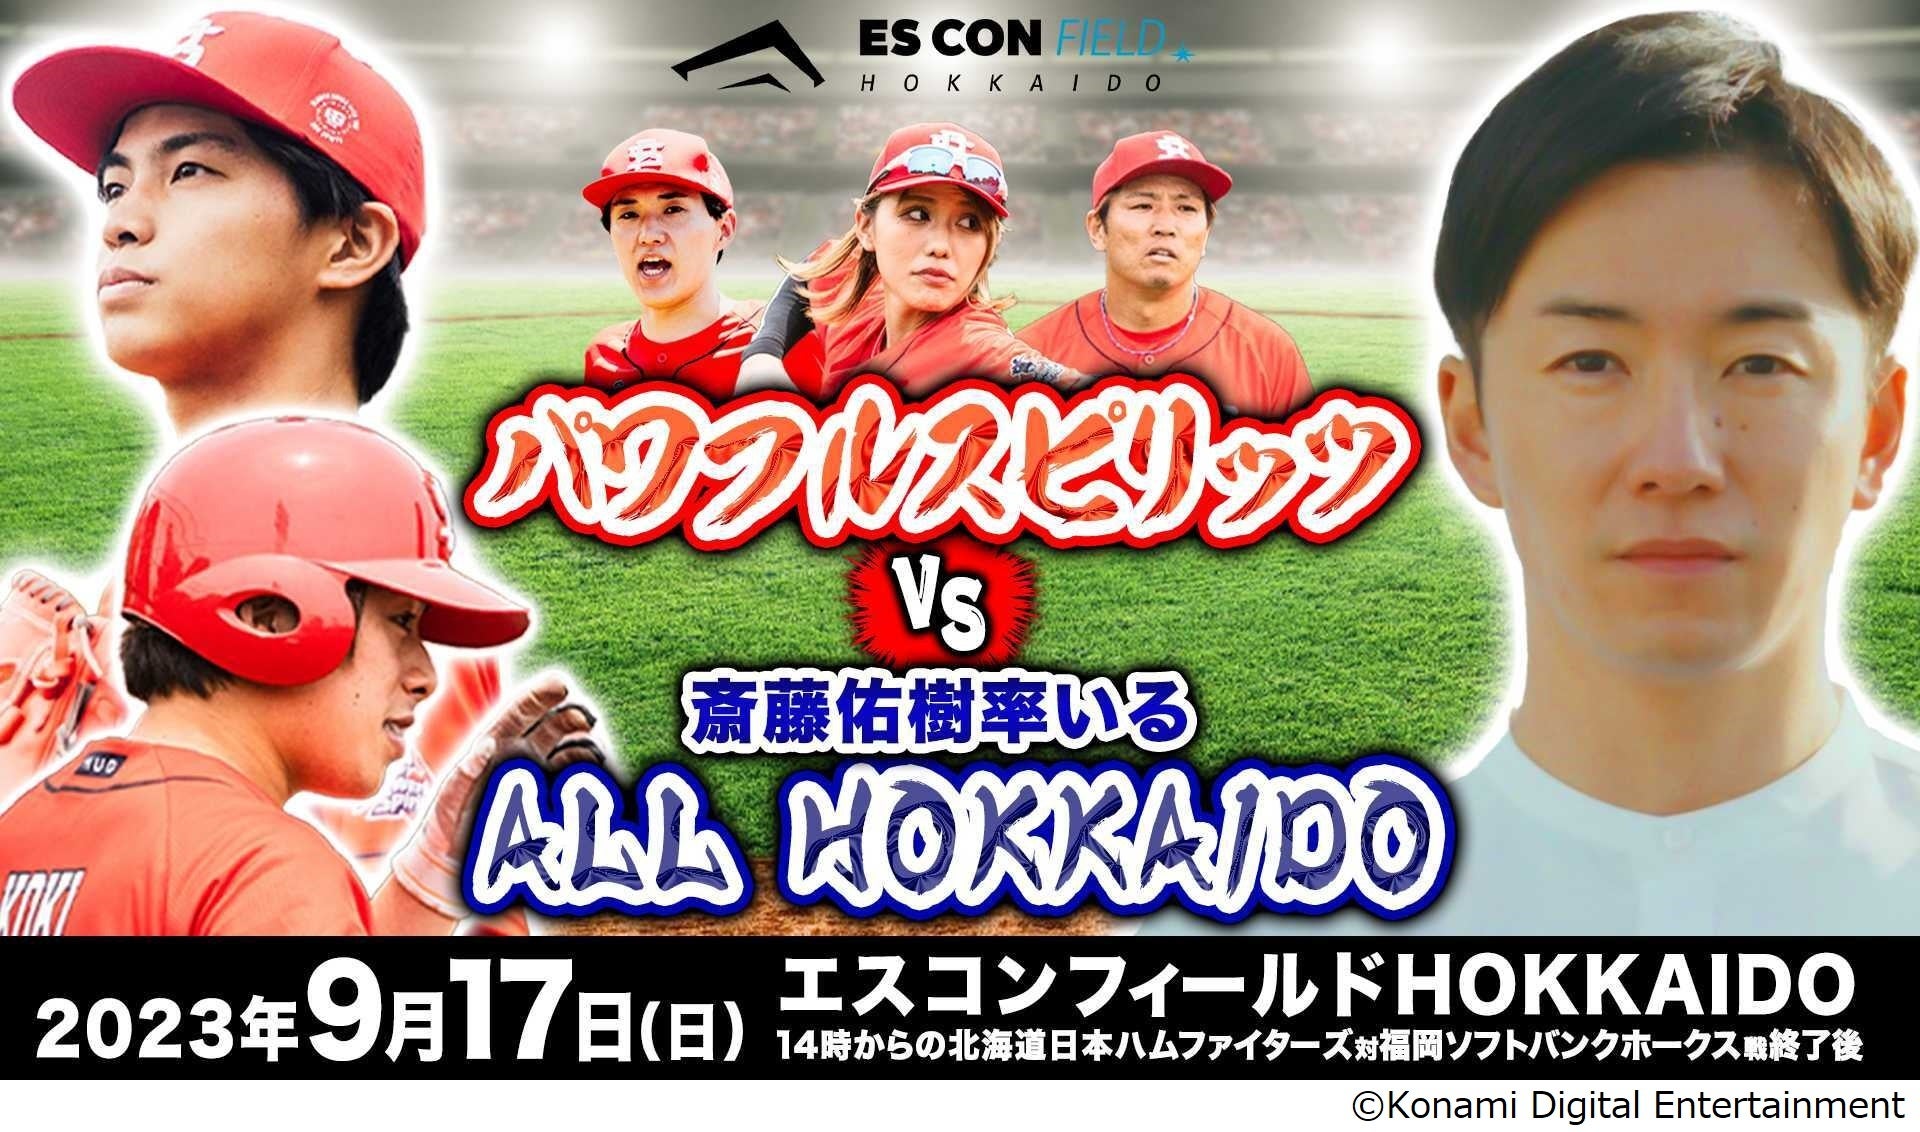 野球インフルエンサーチーム「パワフルスピリッツ」 が斎藤佑樹氏が監督を務める「ALL HOKKAIDO」とエスコンで対戦！